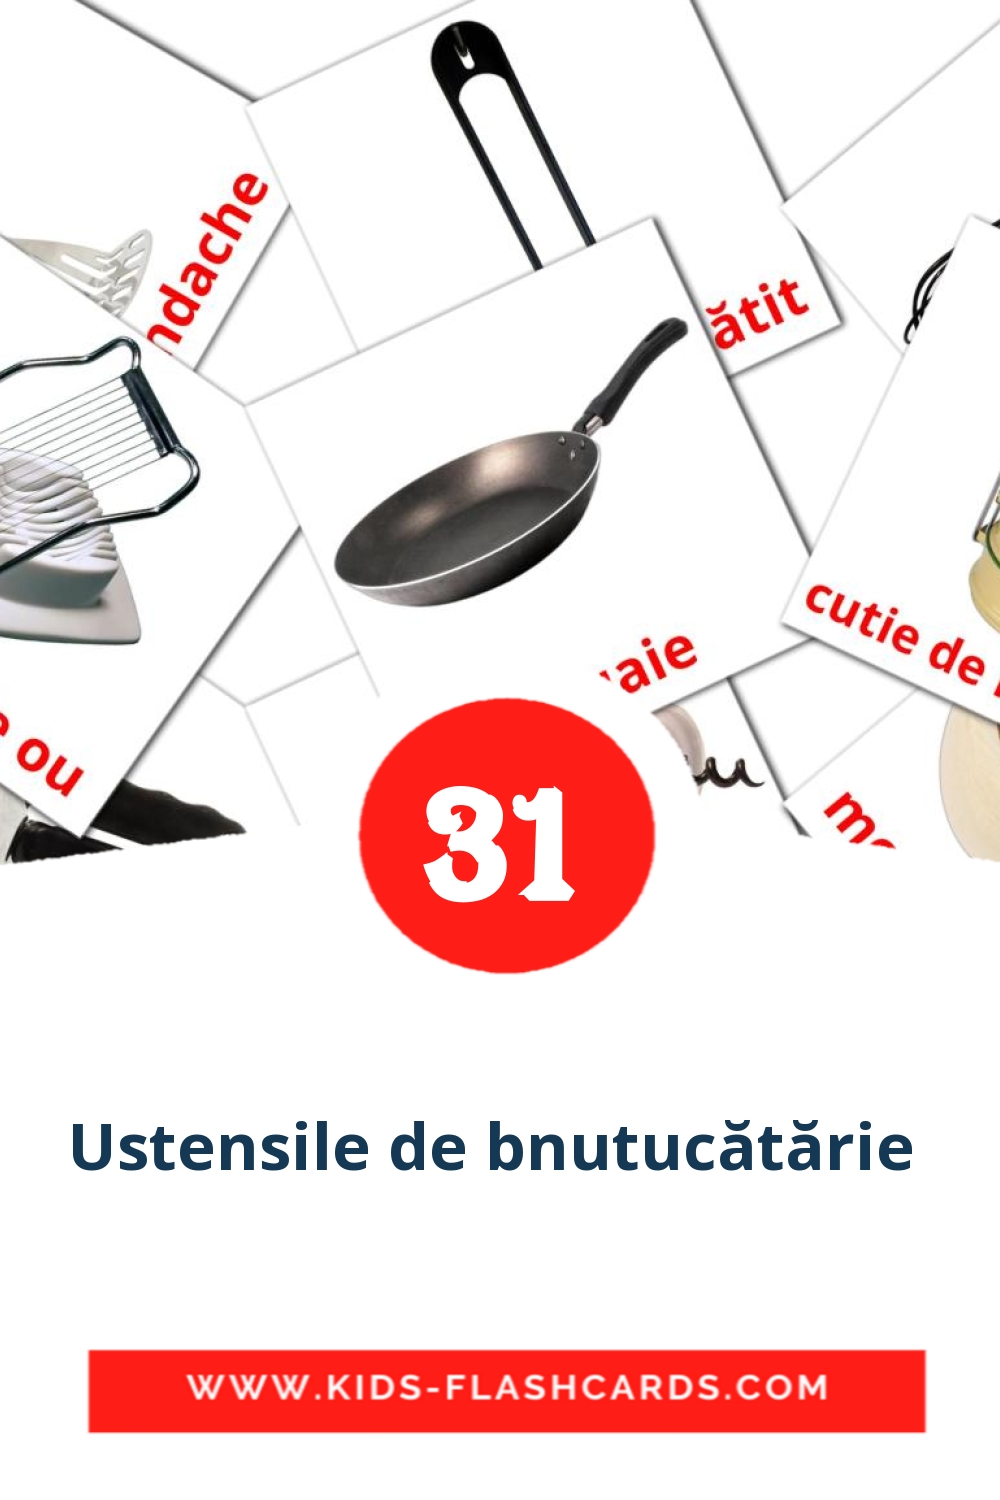 35 Ustensile de bnutucătărie  Bildkarten für den Kindergarten auf Rumänisch